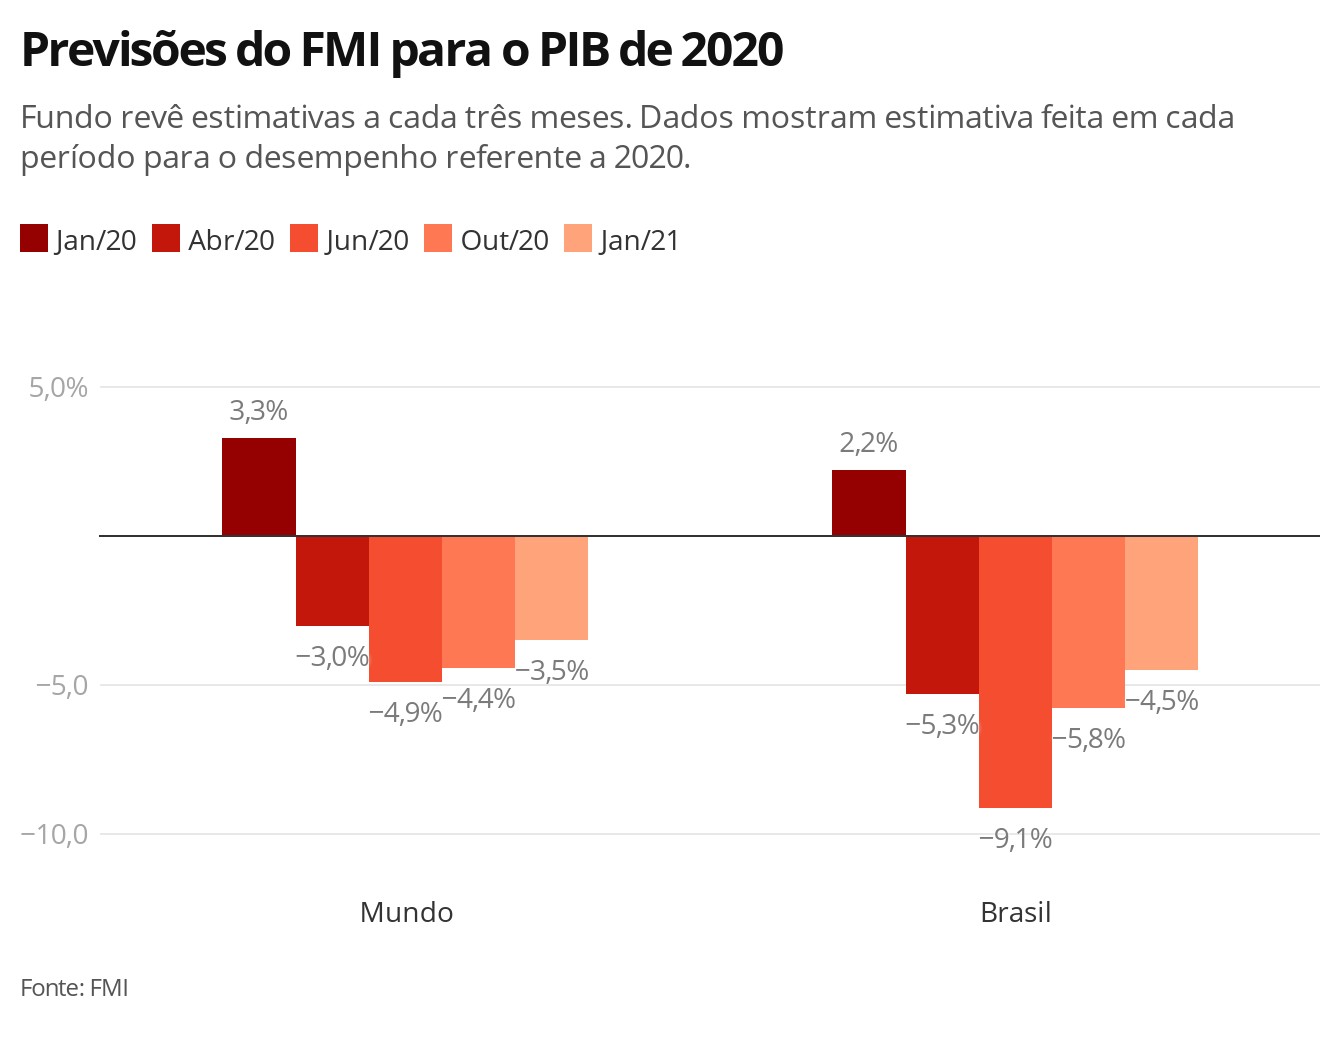 Economias de América Latina e Caribe têm caminho difícil pela frente, diz FMI thumbnail